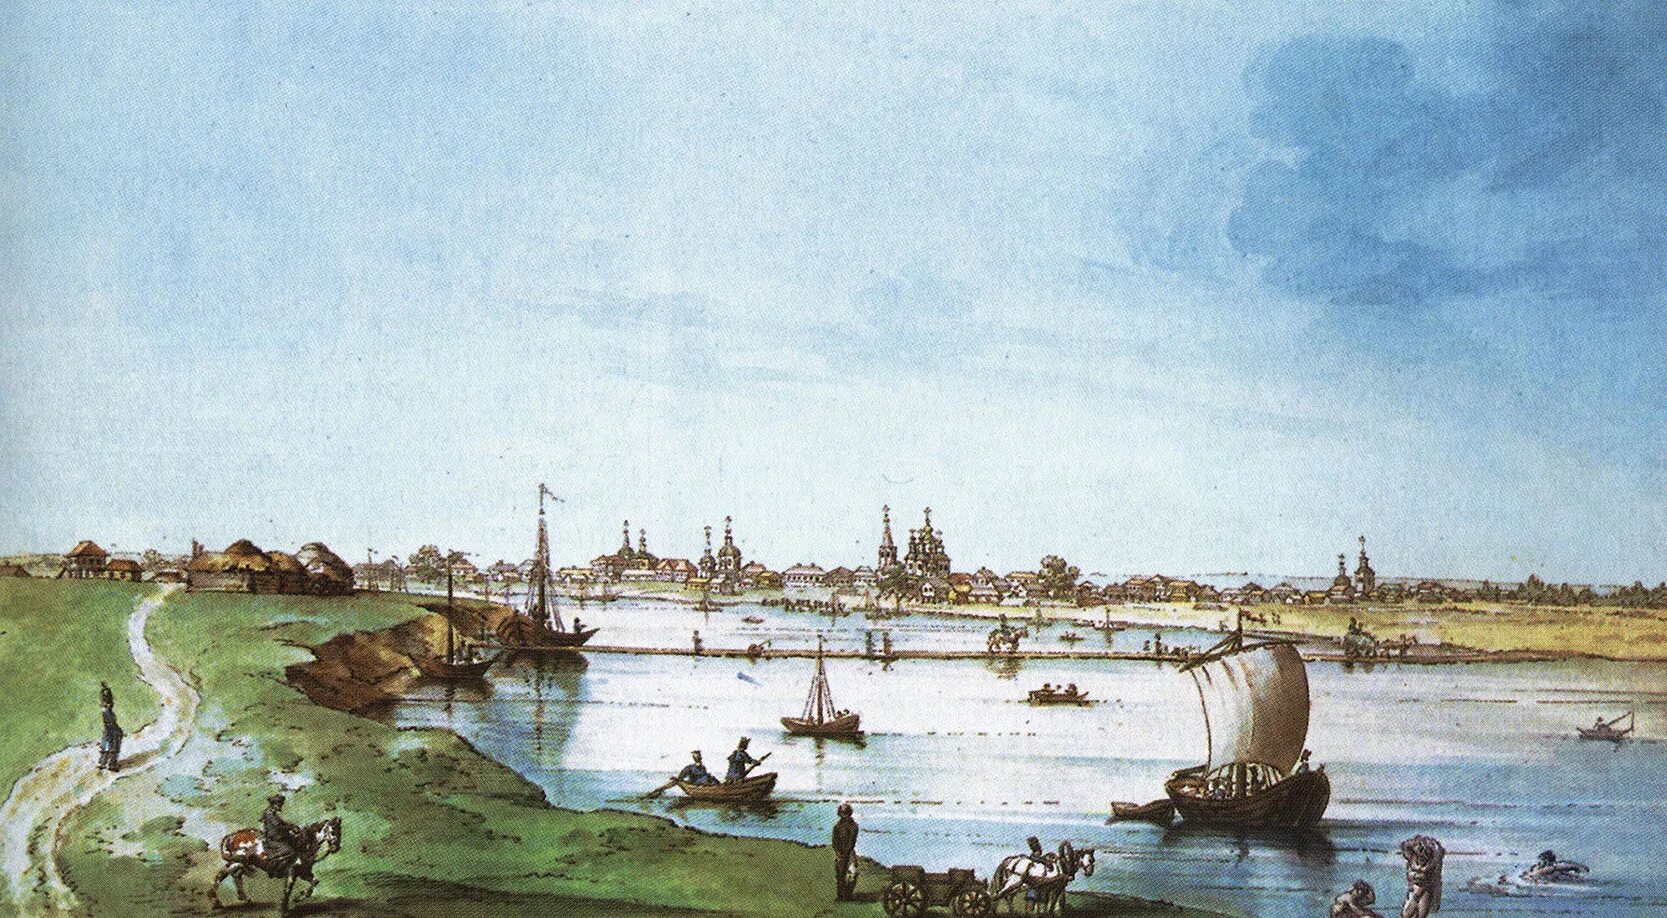 Е.Корнеев."вид города Черкасска".1803.акварель. Черкасск 18 век. Старинный город Черкасск. Черкасск образован в 1570 году.